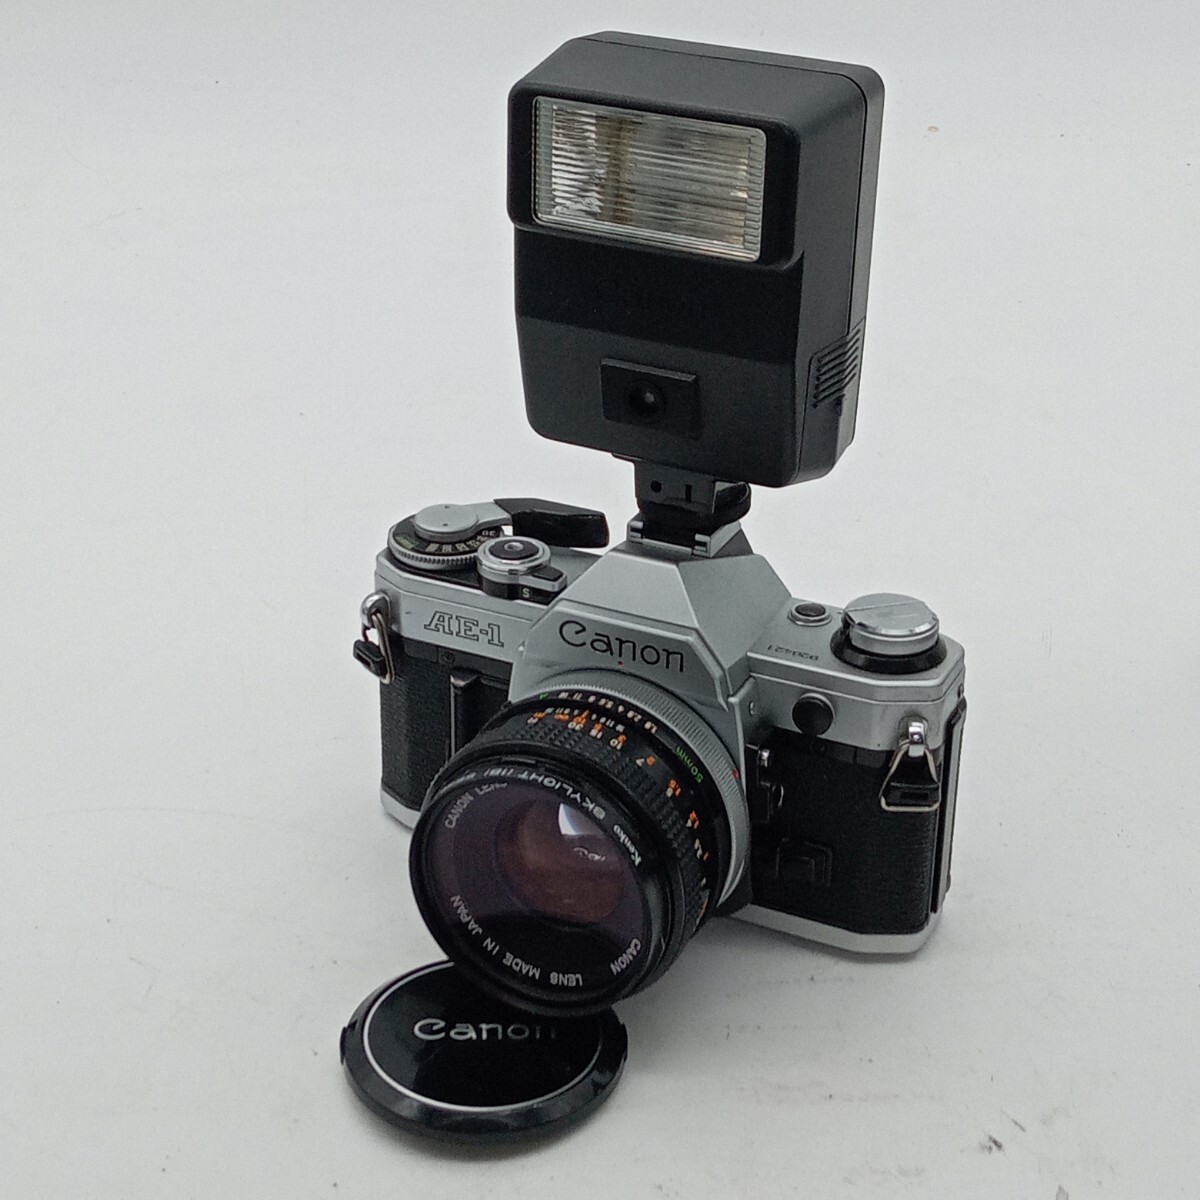 大村4月No.87 カメラ Canon キャノン AE-1 1:1.8 50mm 動作未確認 フィルムカメラ 一眼レフカメラ フラッシュ まとめての画像1